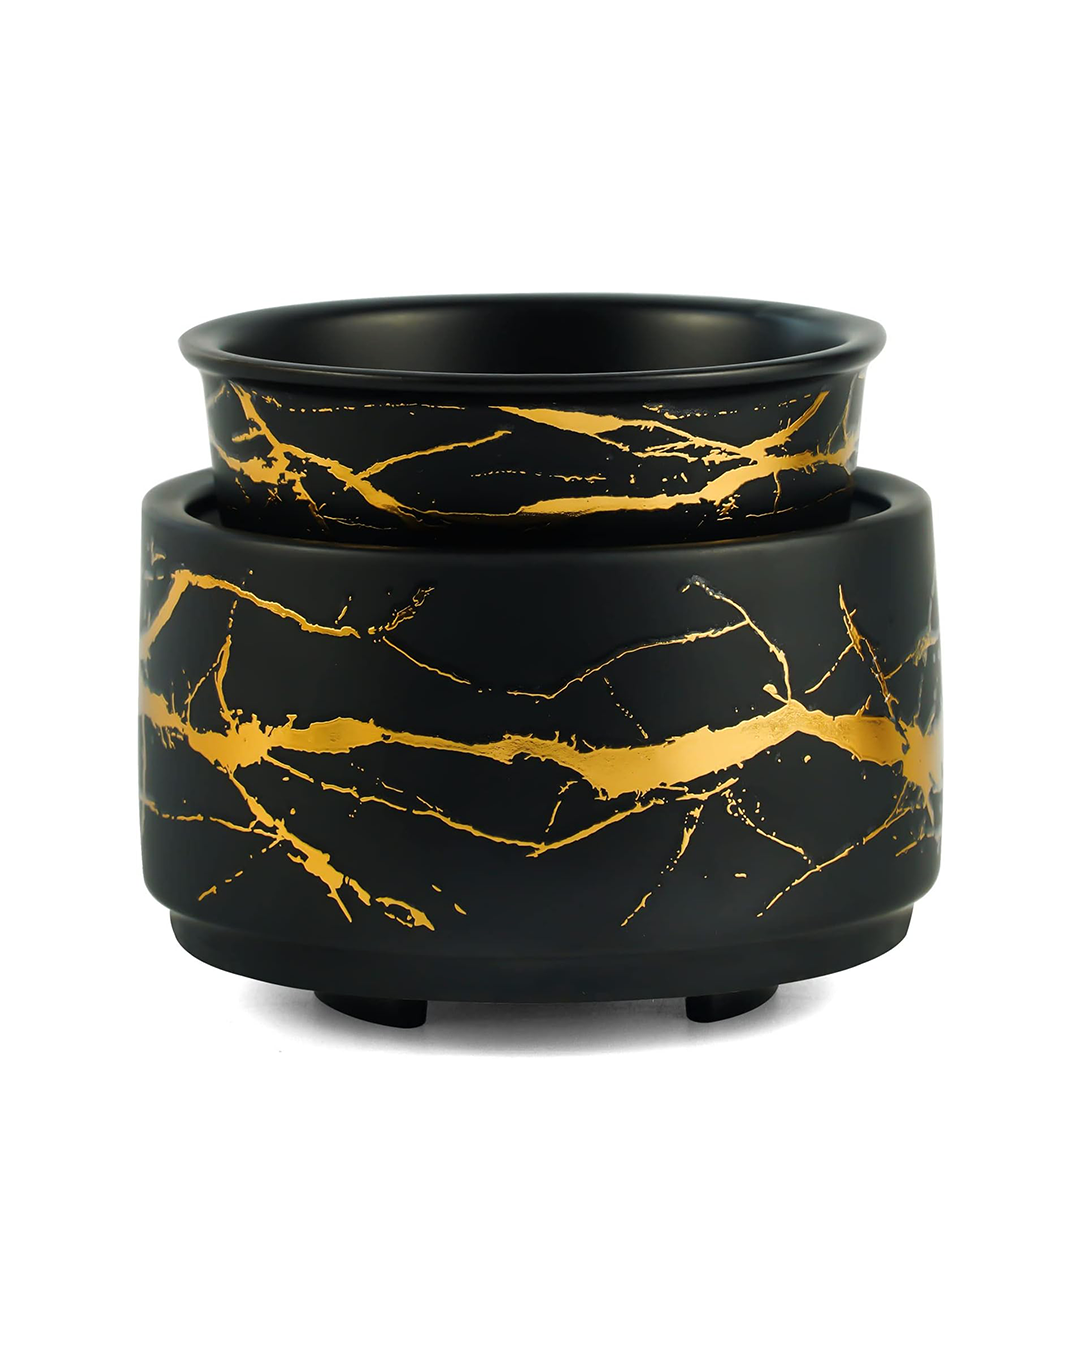 Wax Melt Burner Ceramic 3-in-1 Oil Burner Electric Candle Wax Burner (Black Gold)